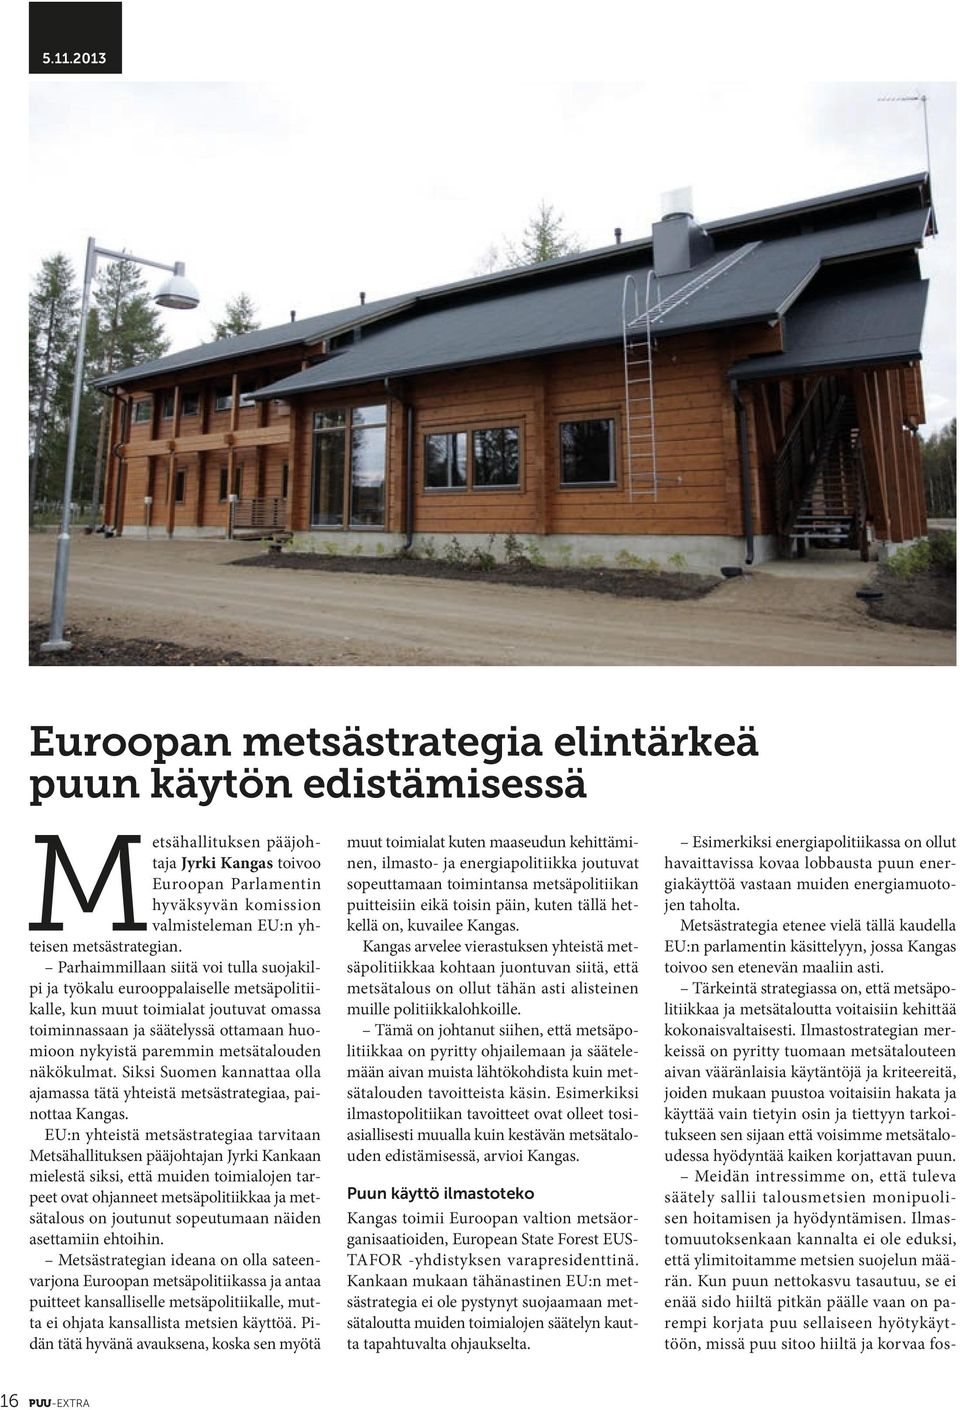 2013 Euroopan metsästrategia elintärkeä puun käytön edistämisessä Metsähallituksen pääjohtaja Jyrki Kangas toivoo Euroopan Parlamentin hyväksyvän komission valmisteleman EU:n yhteisen metsästrategian.